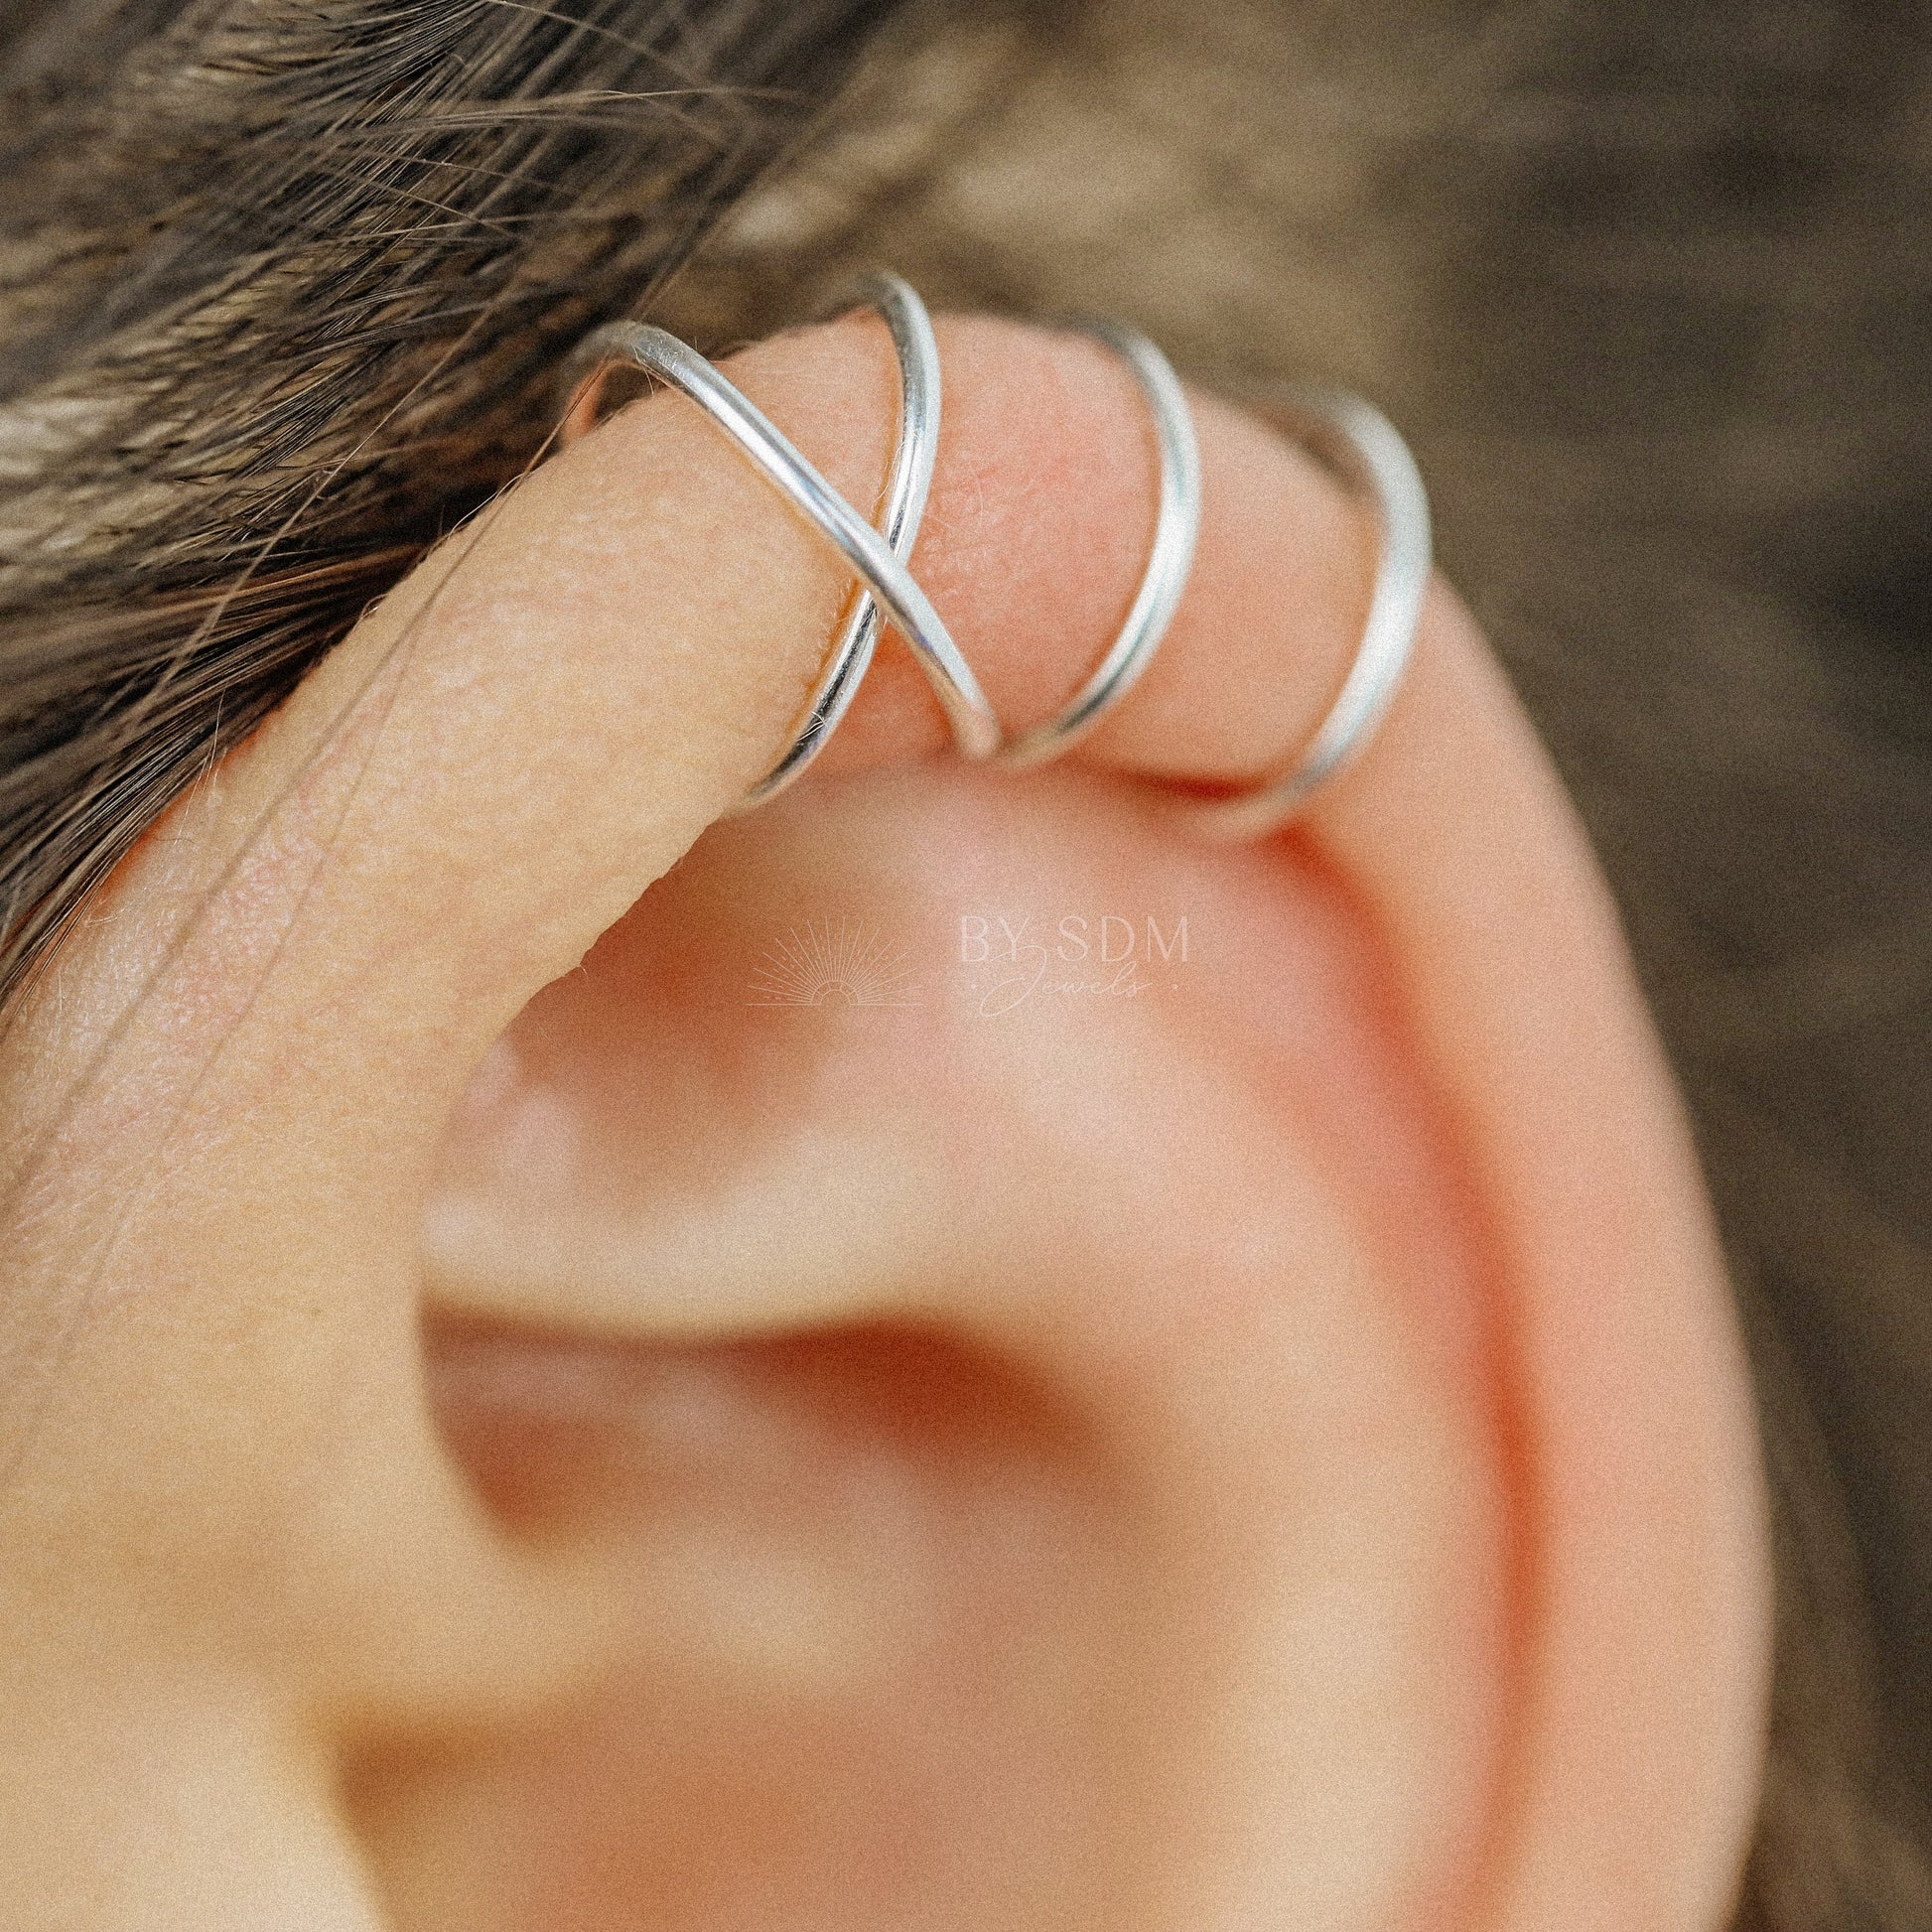 Set of 2 Ear Cuffs or Single Ear Cuff 20g Double & Criss Cross Ear Cuff No Piercing Cartilage Ear Cuff Silver Ear Cuff Gold Ear Cuff